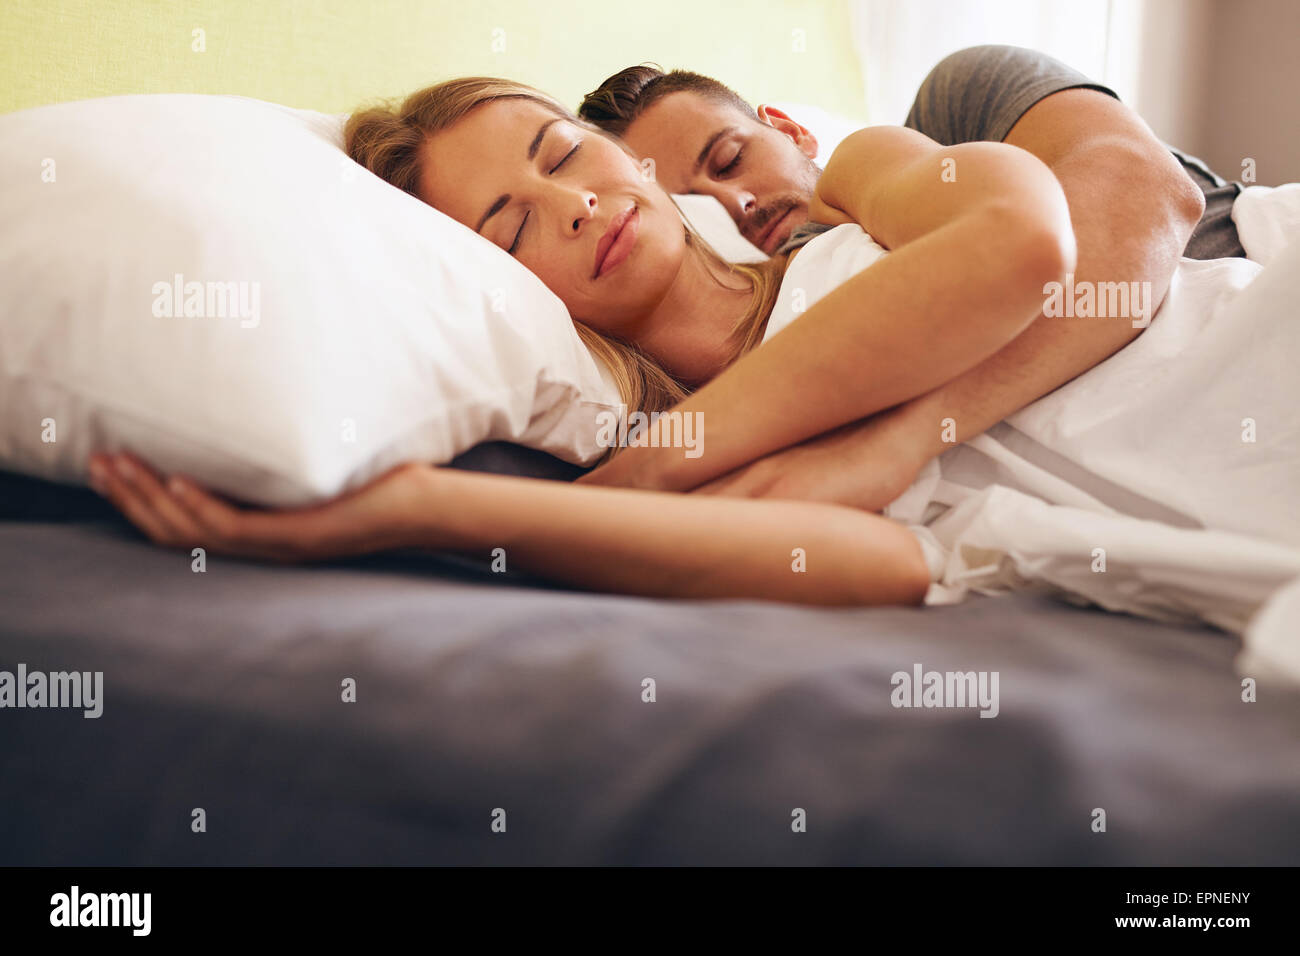 Bild eines jungen Paares zusammen schlafen bequem auf dem Bett. Junger Mann und Frau liegen und schlafen. Stockfoto